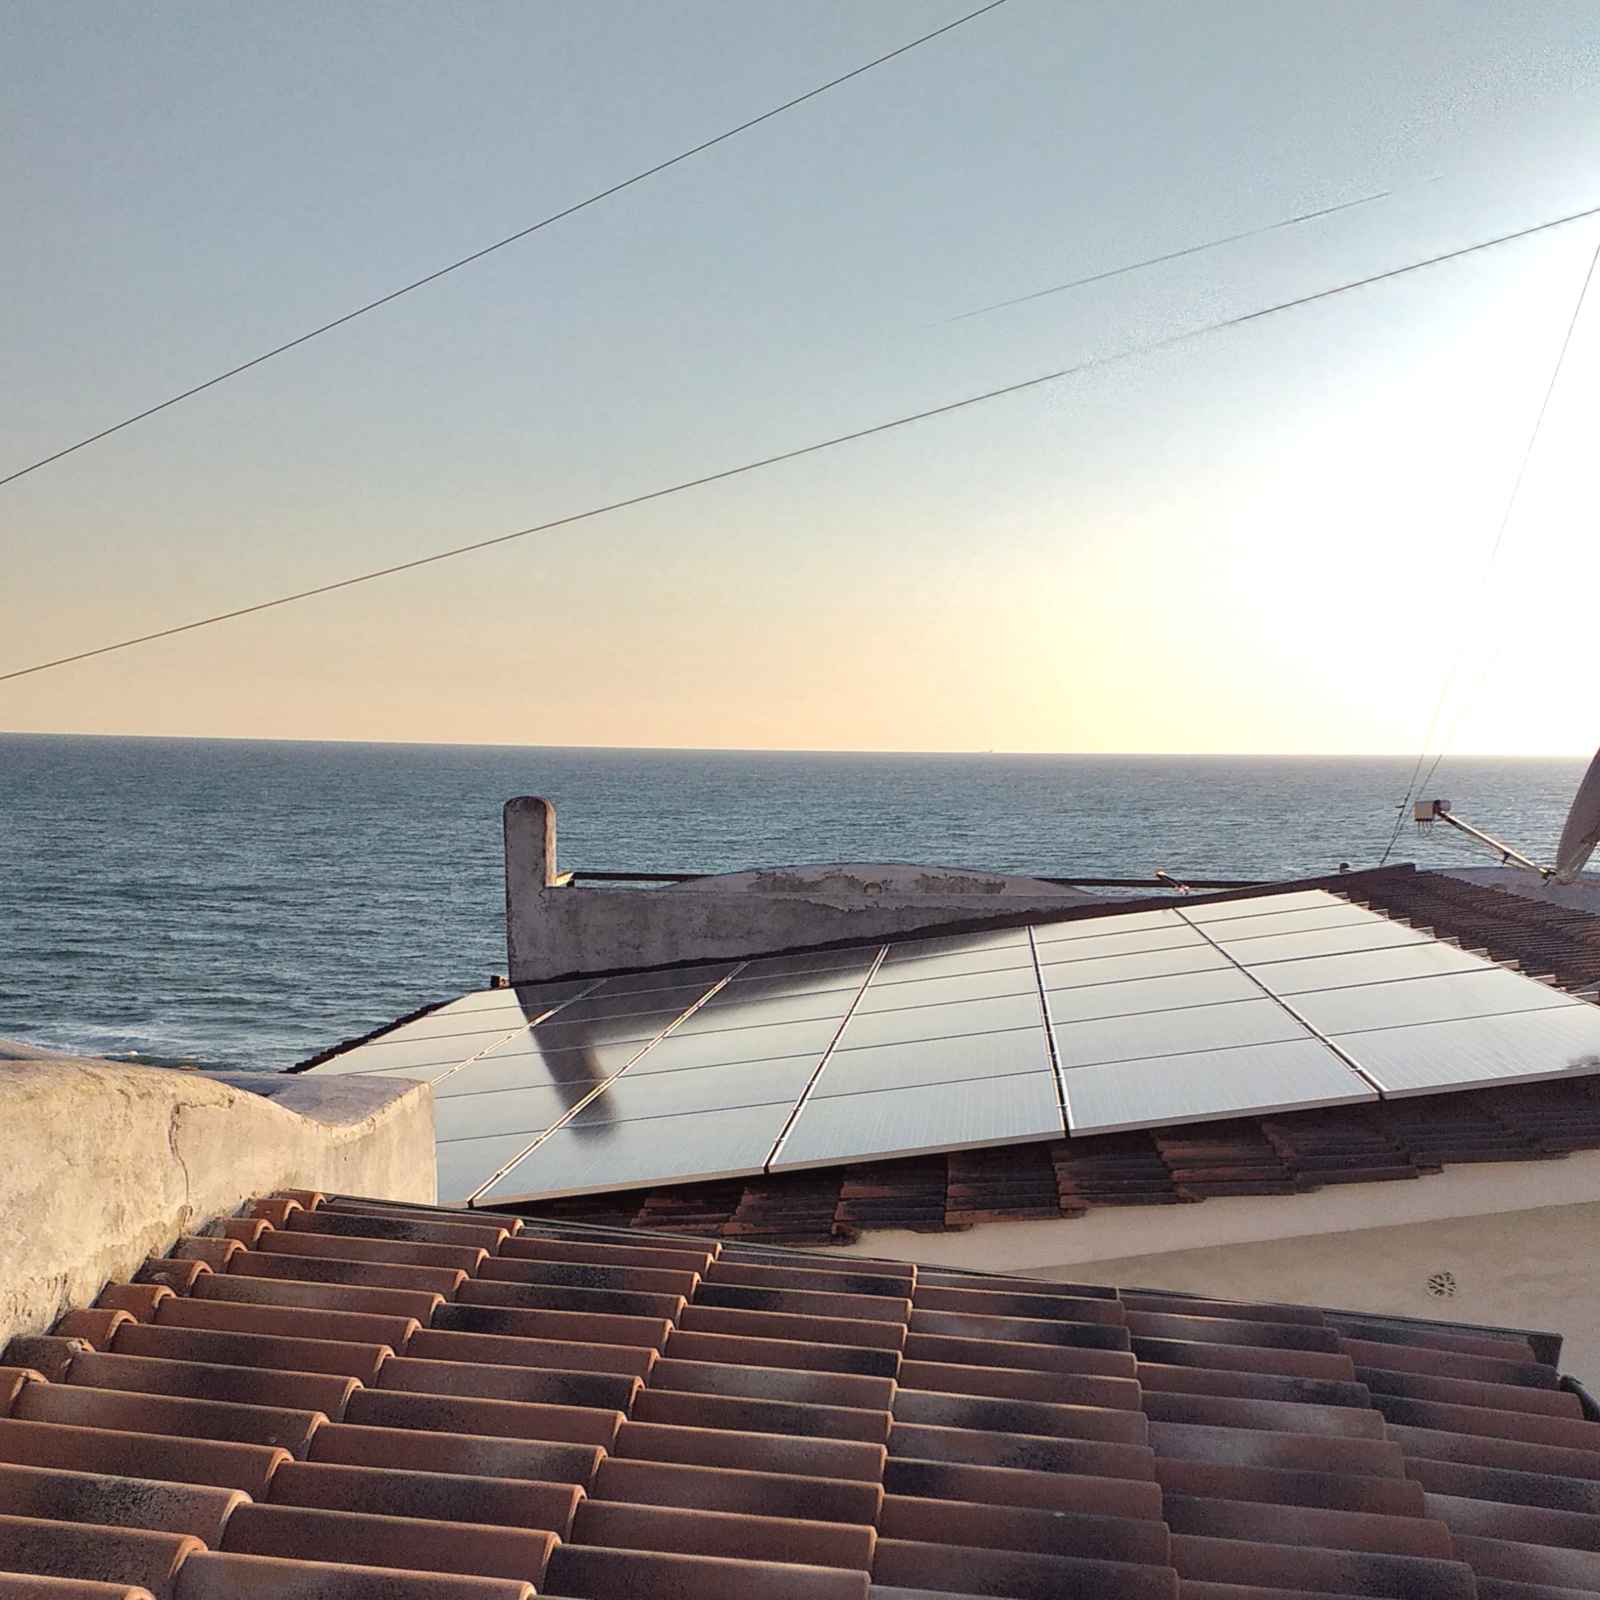 Impianto fotovoltaico al servizio Residence Elianto Anzio per soddisfare il fabbisogno energetico della struttura nel rispetto per l'ambiente